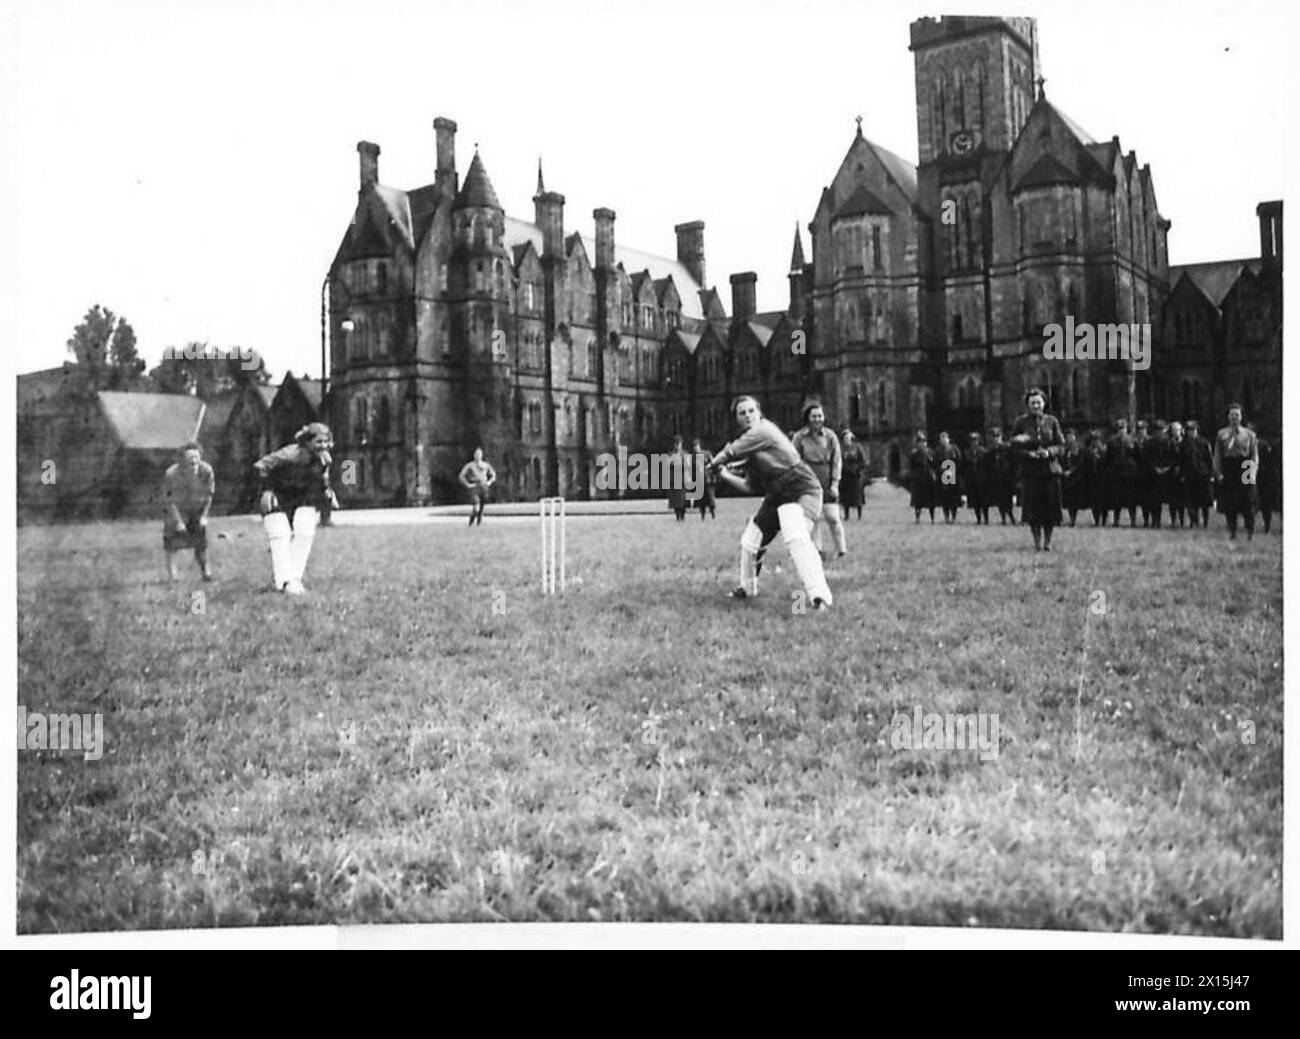 Ein TAG MIT DEN A.T.S. IM TRAINING - Netball und Cricket werden bei den Spielen der British Army gespielt Stockfoto